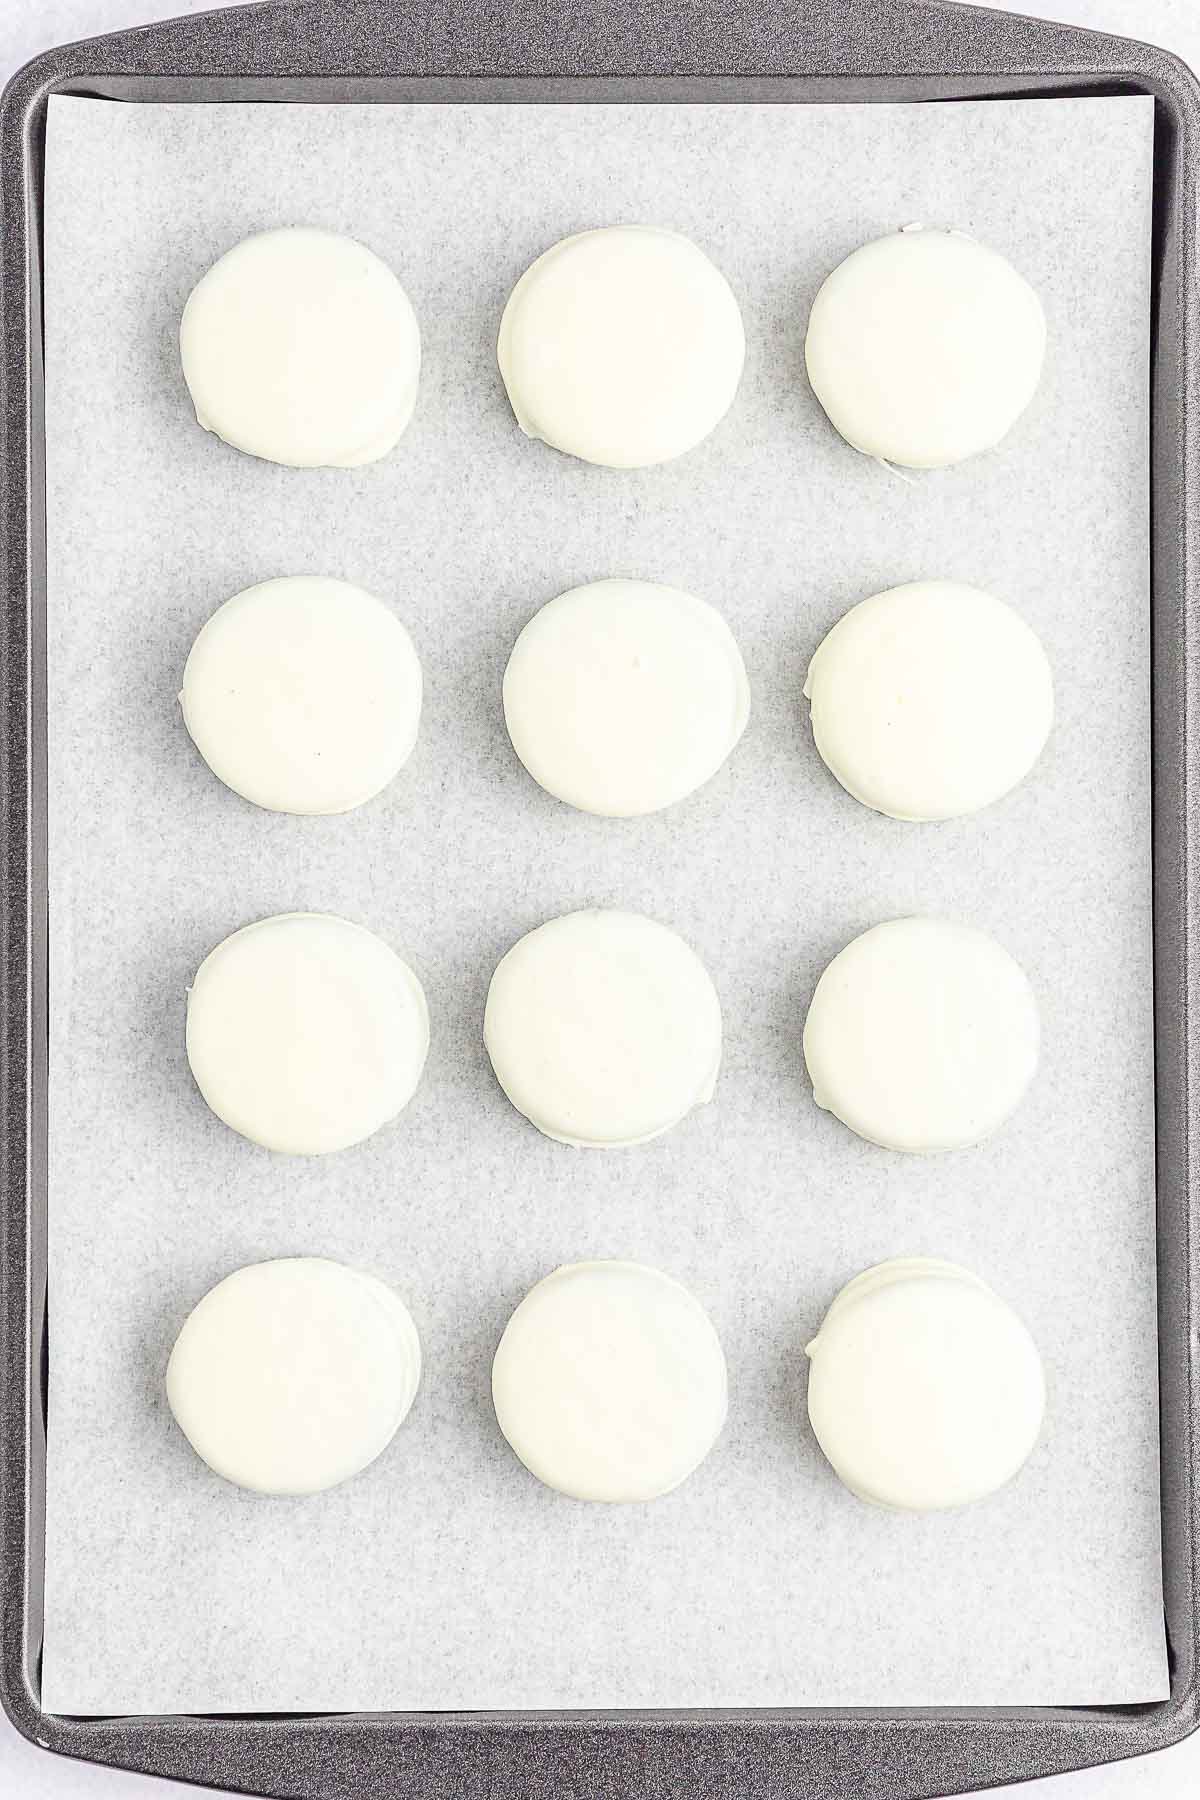 Multiple white coated oreos on a baking sheet.